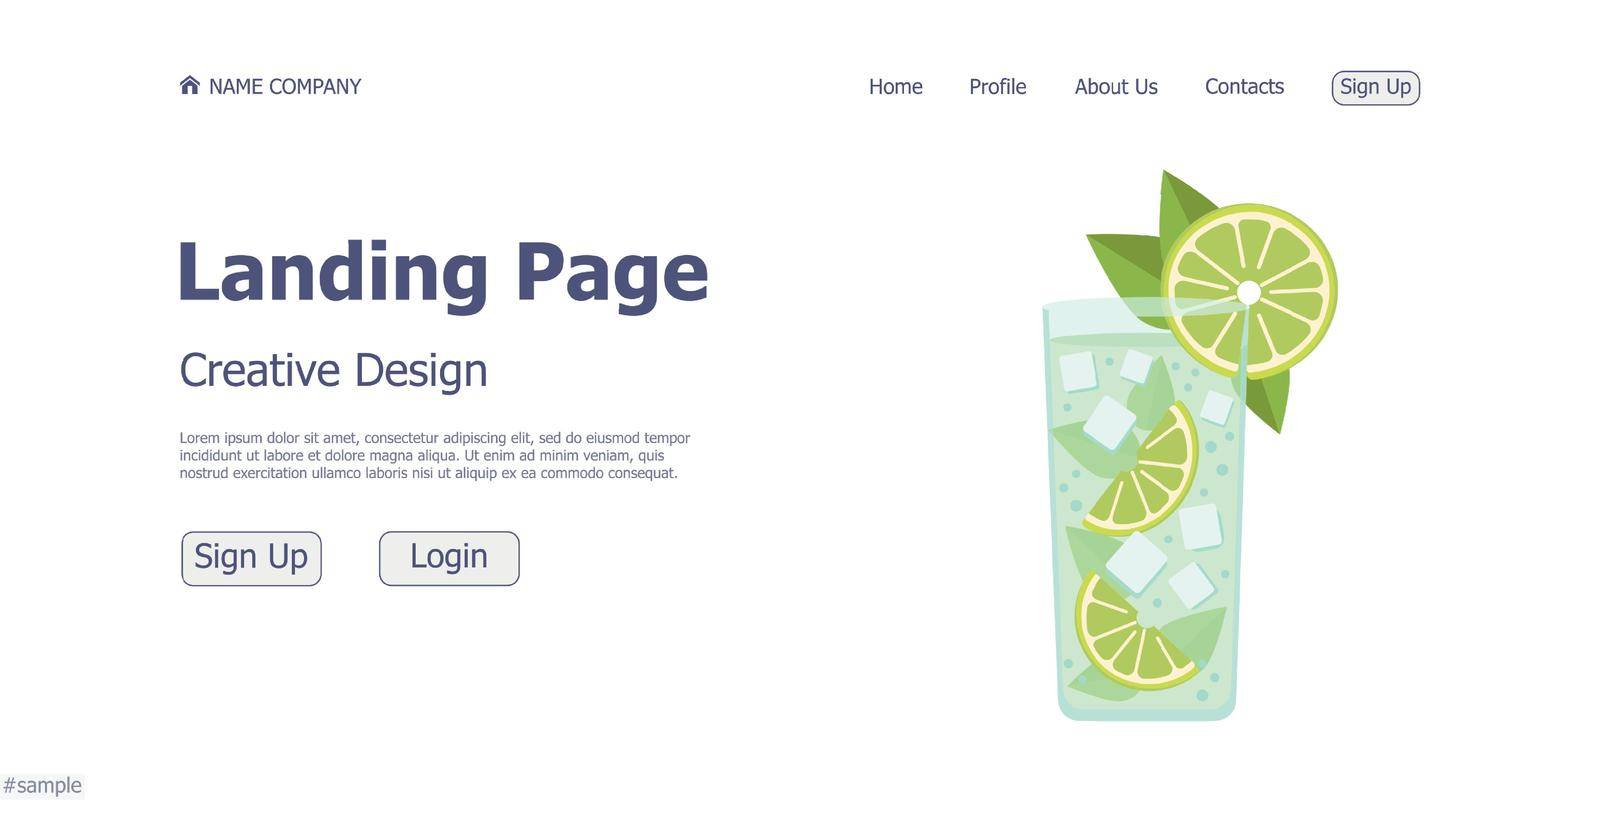 Cocktail bar website landing page design concept - Vector illustration